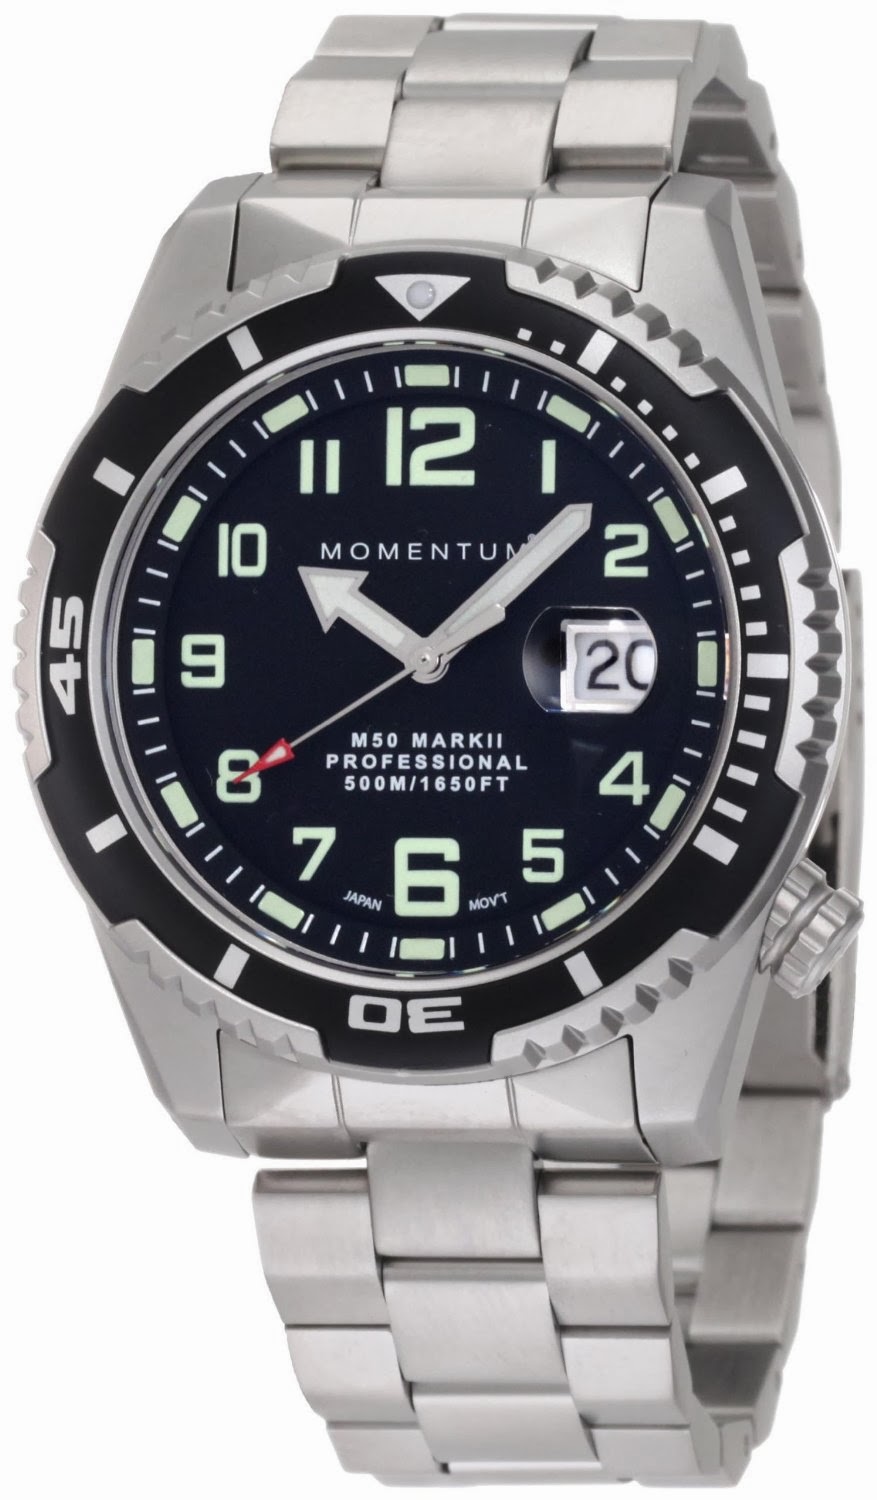 ... DV52B0, M50 Mark II Military Inspired Steel Bracelet Watches for Men